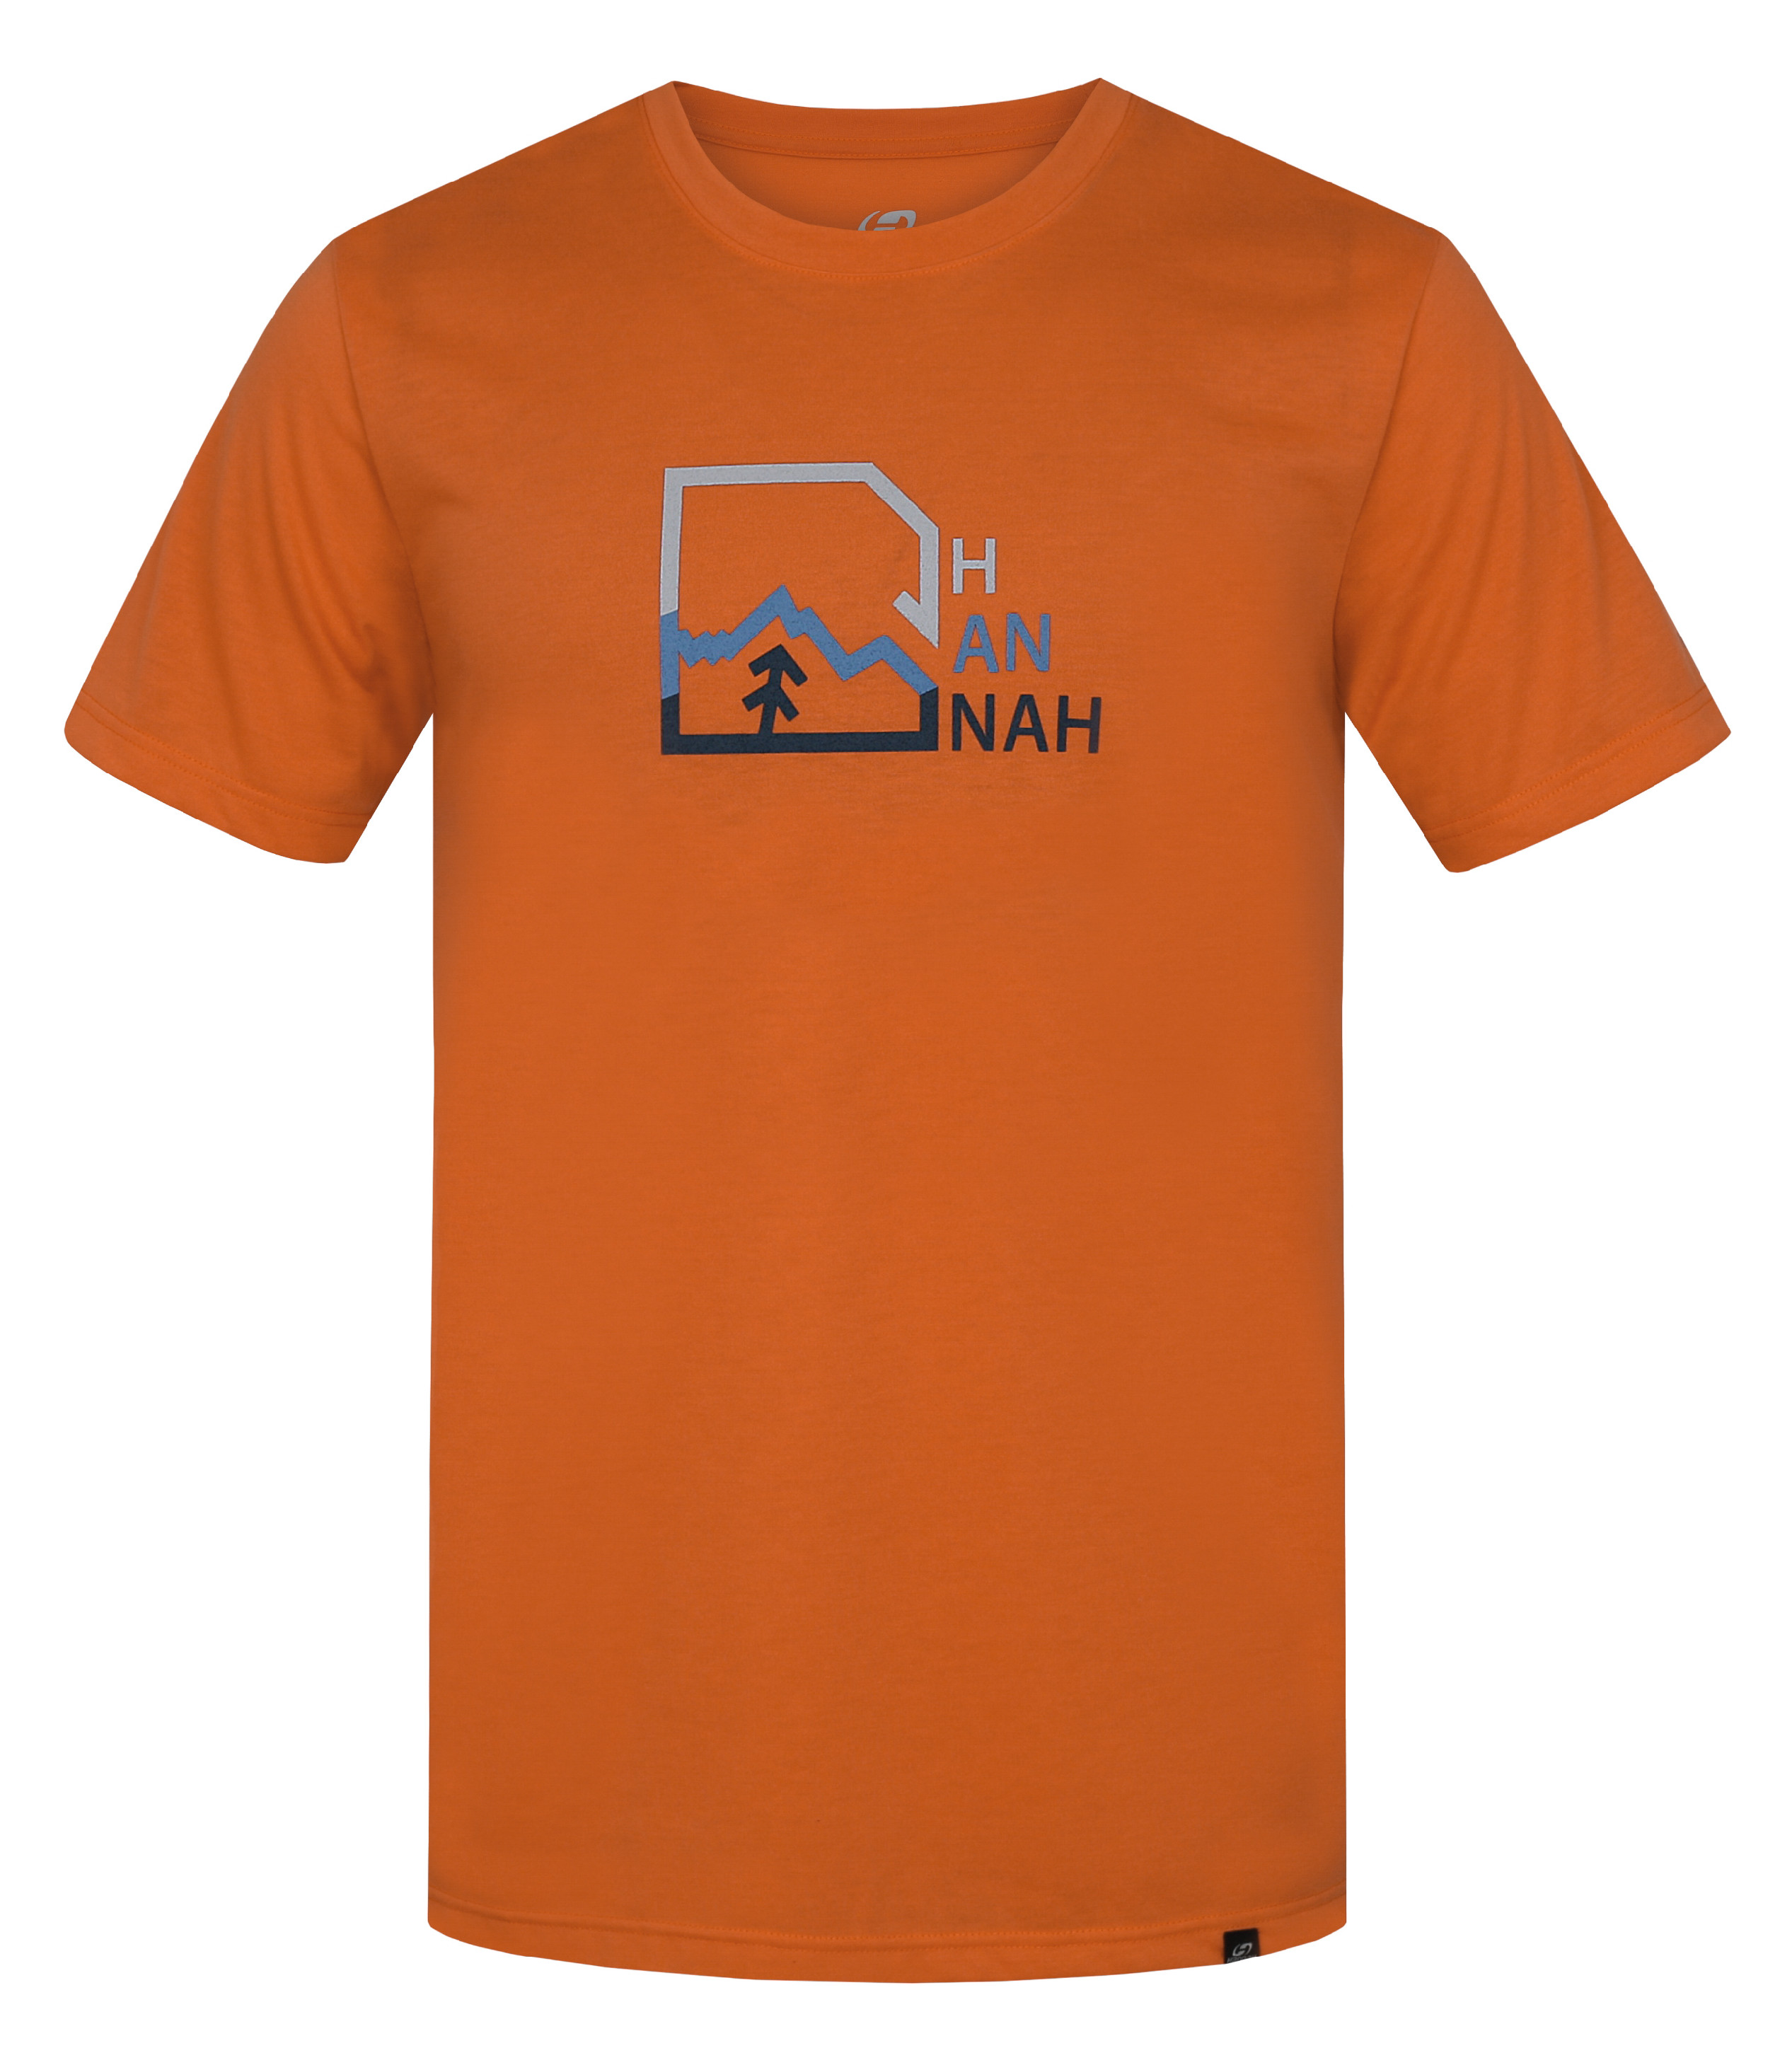 Hannah BITE jaffa orange Velikost: XXL tričko s krátkým rukávem